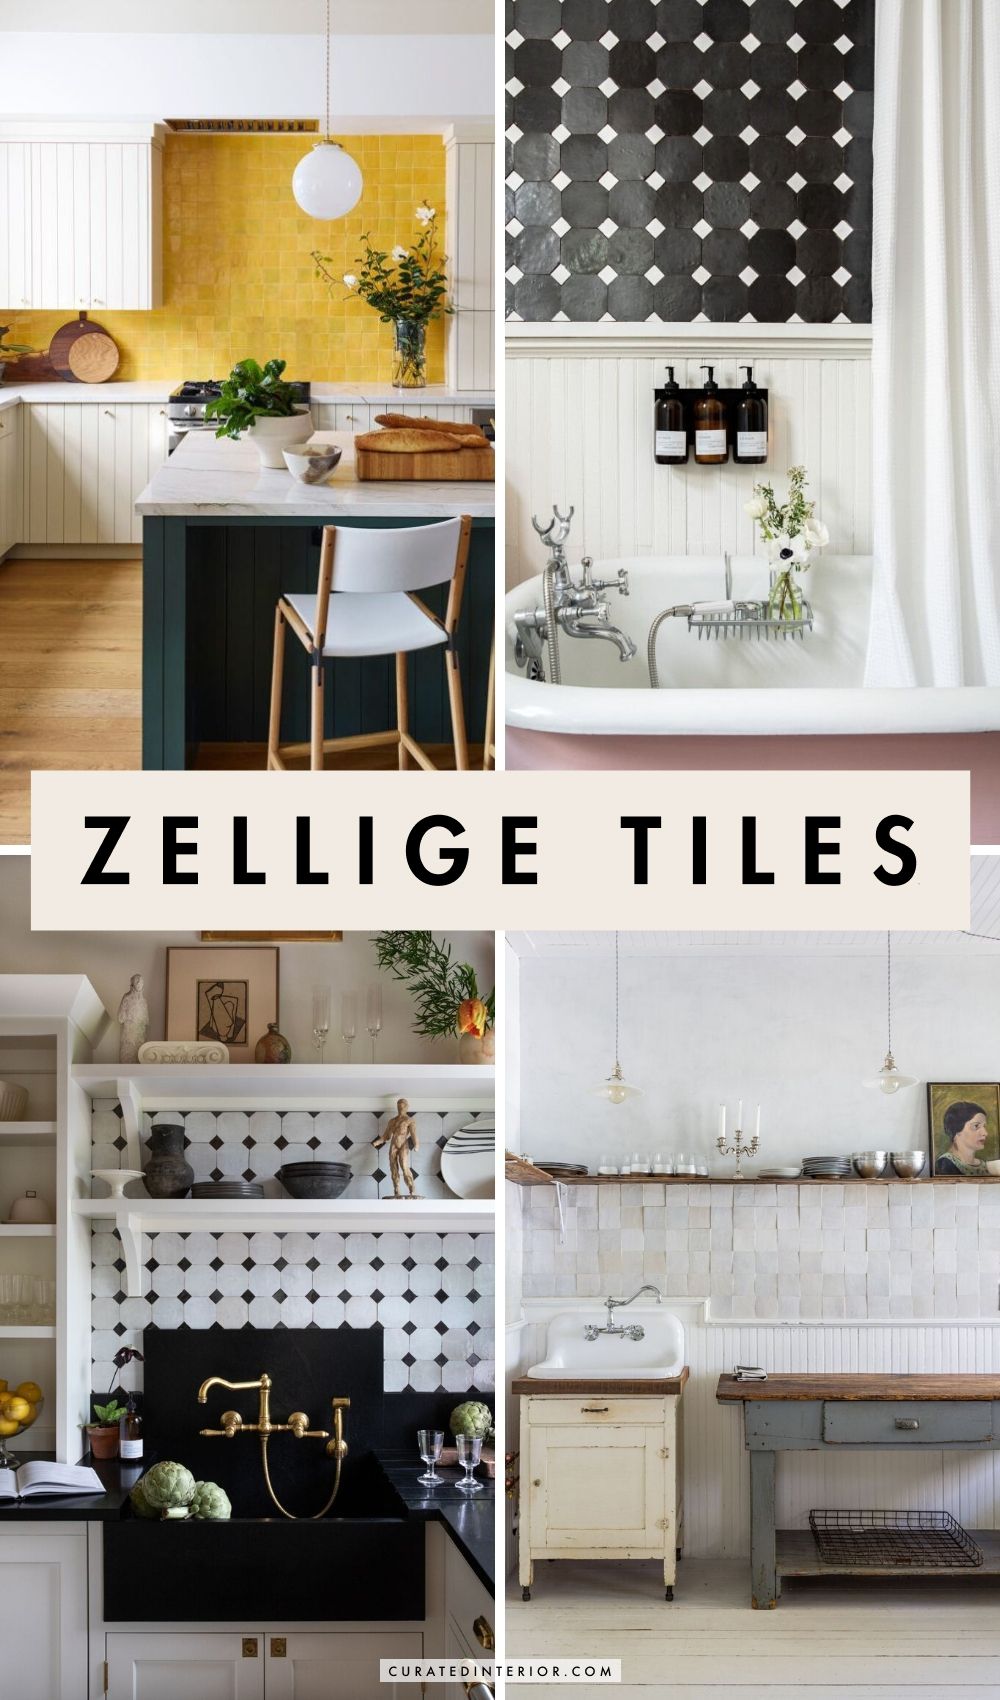 All About the Zellige Tiles Backsplash Trend